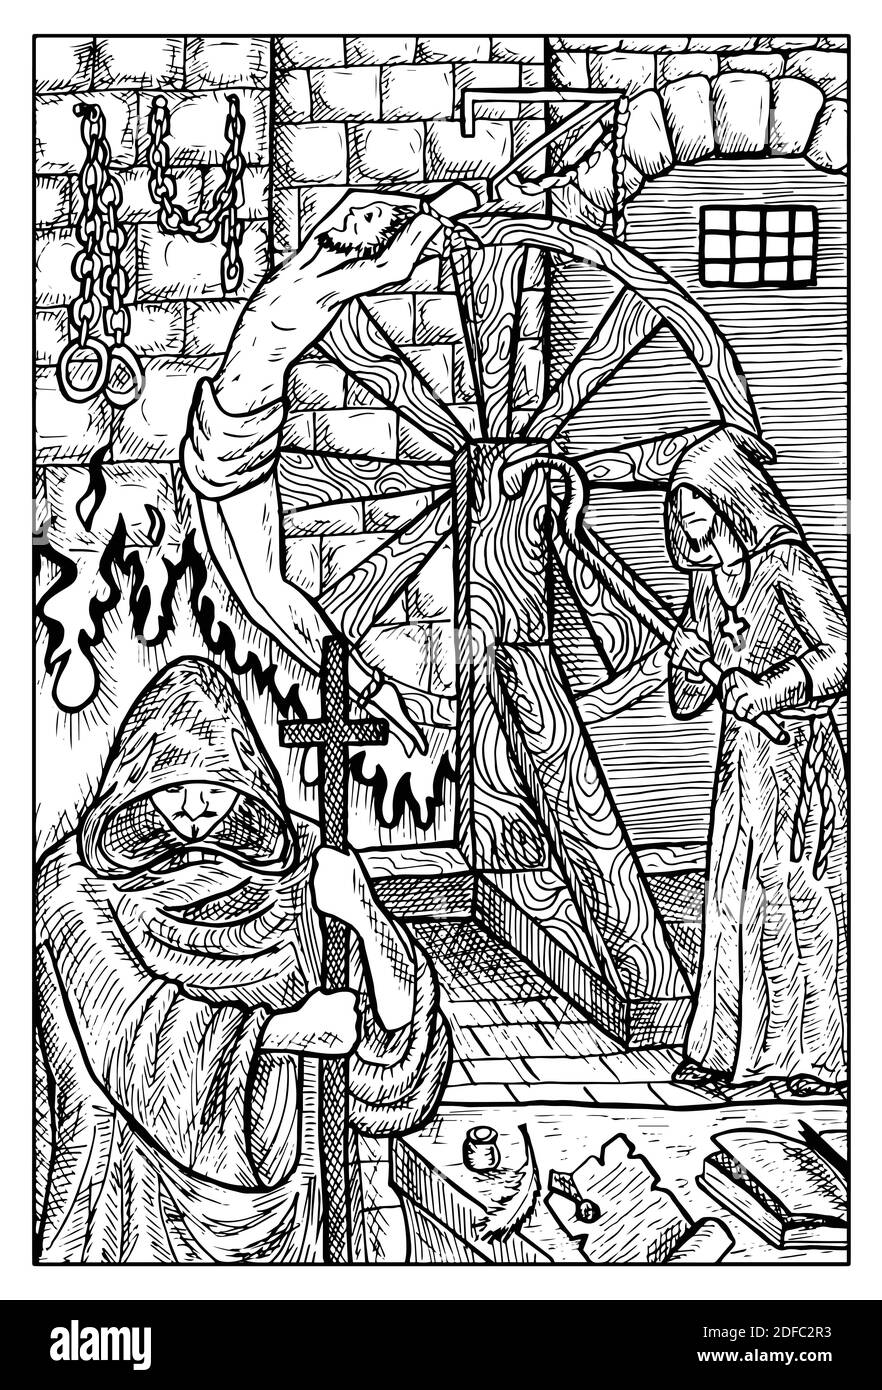 Inquisitor. Illustration fantaisie noire et blanche gravée avec créatures et personnages mythologiques Illustration de Vecteur